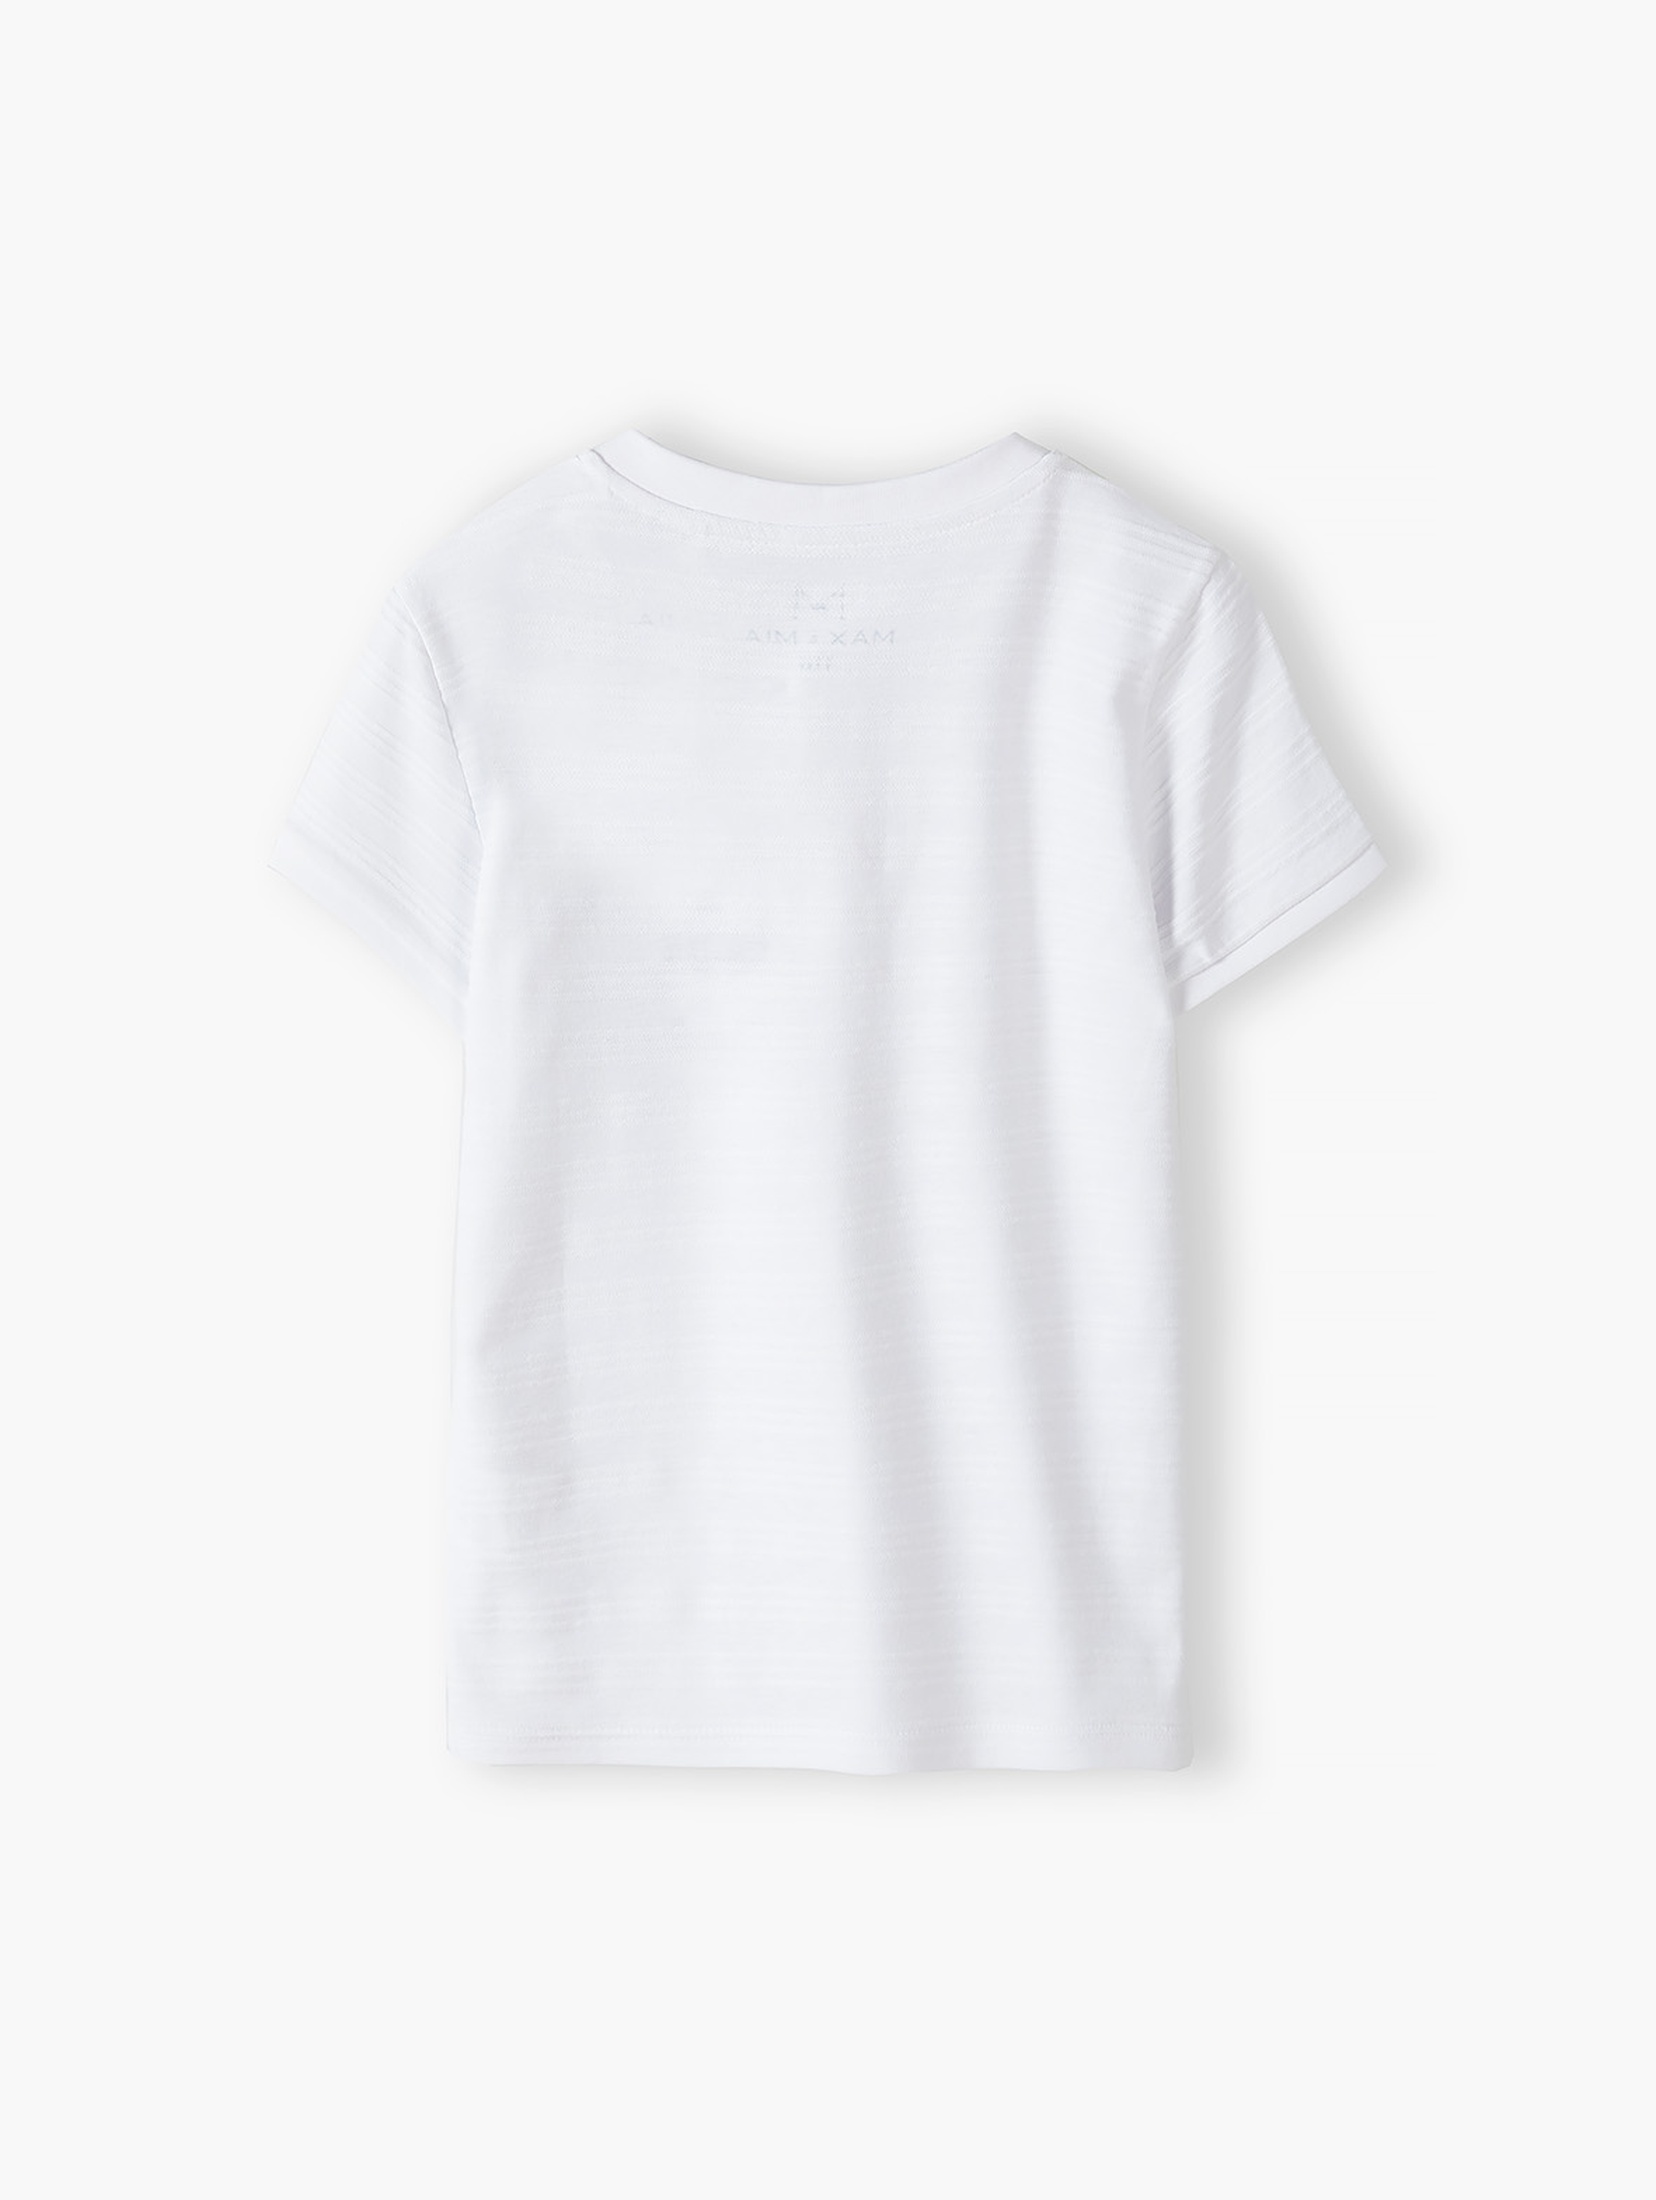 Biały elegancki t-shirt bawełniany dla chłopca